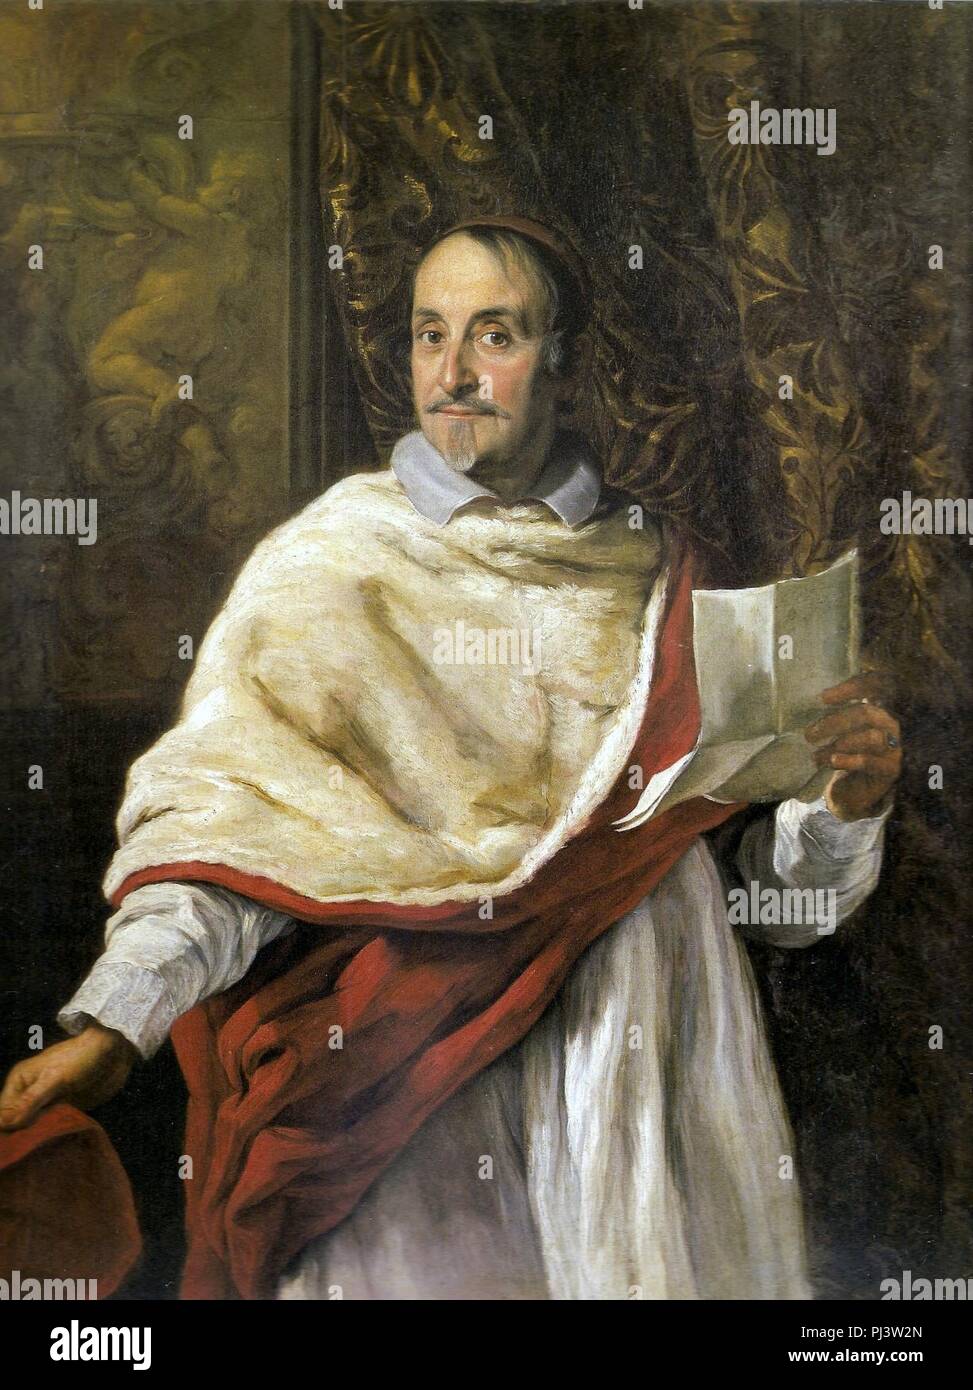 Baciccio - Retrato do Cardeal Ludovico Omodei. Foto Stock